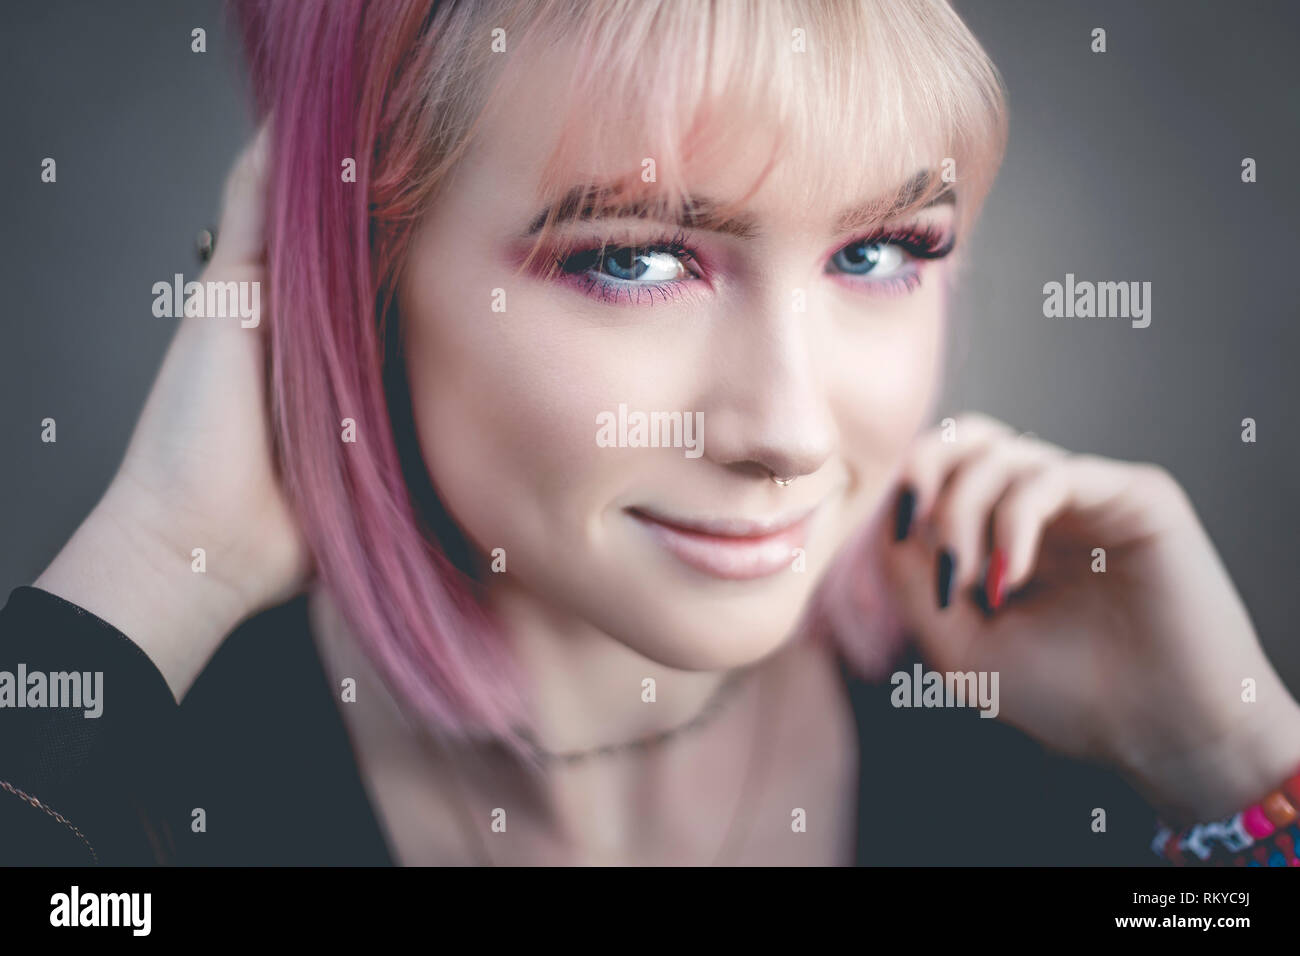 Retrato de jovencita con el pelo rosa y perforó la nariz mirando a la cámara. Foto de stock